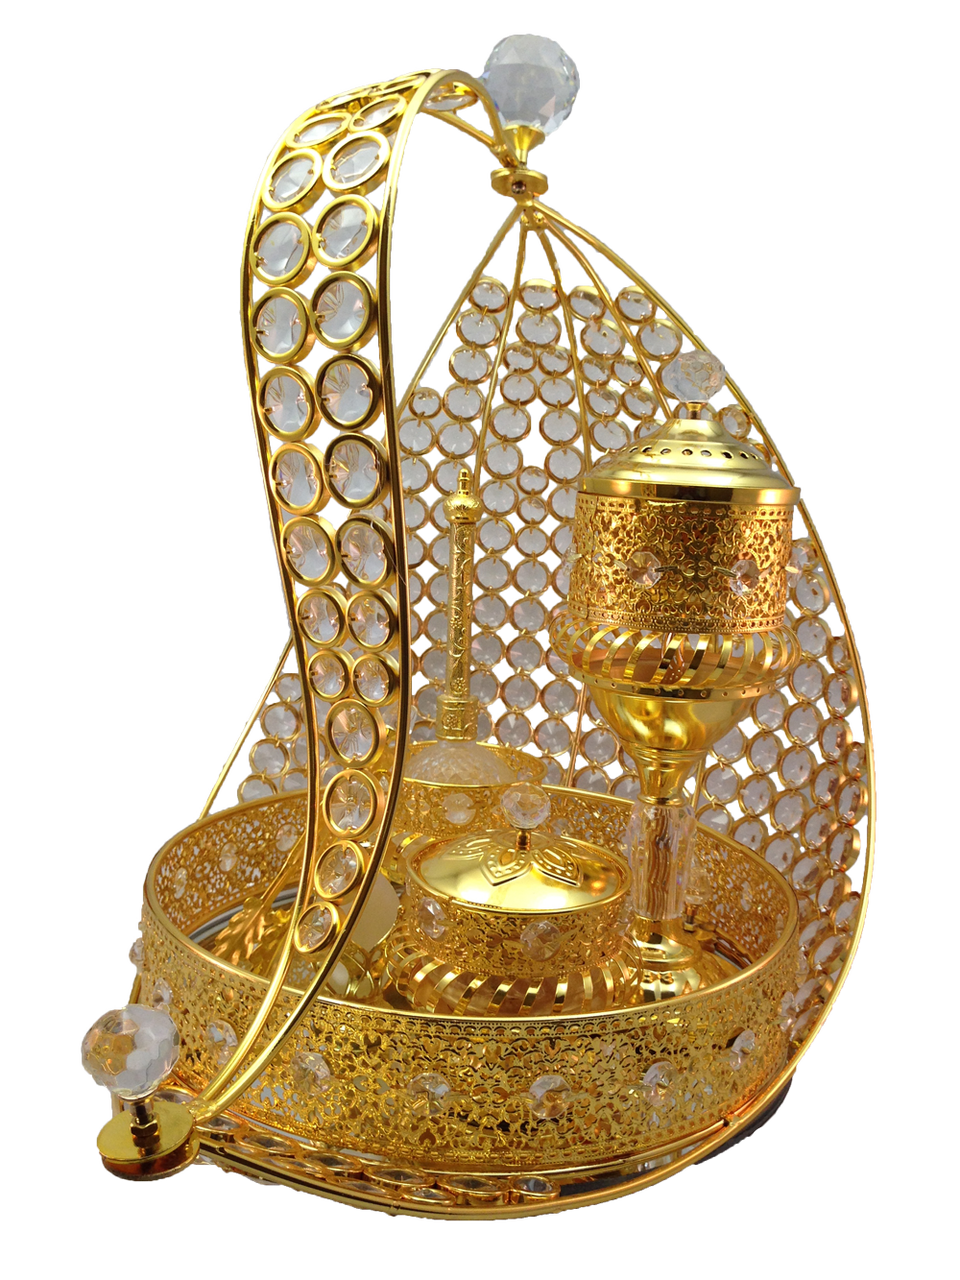 Metal Glass Gold Arabic Incense Bakhoor Burner Mabkhara Set